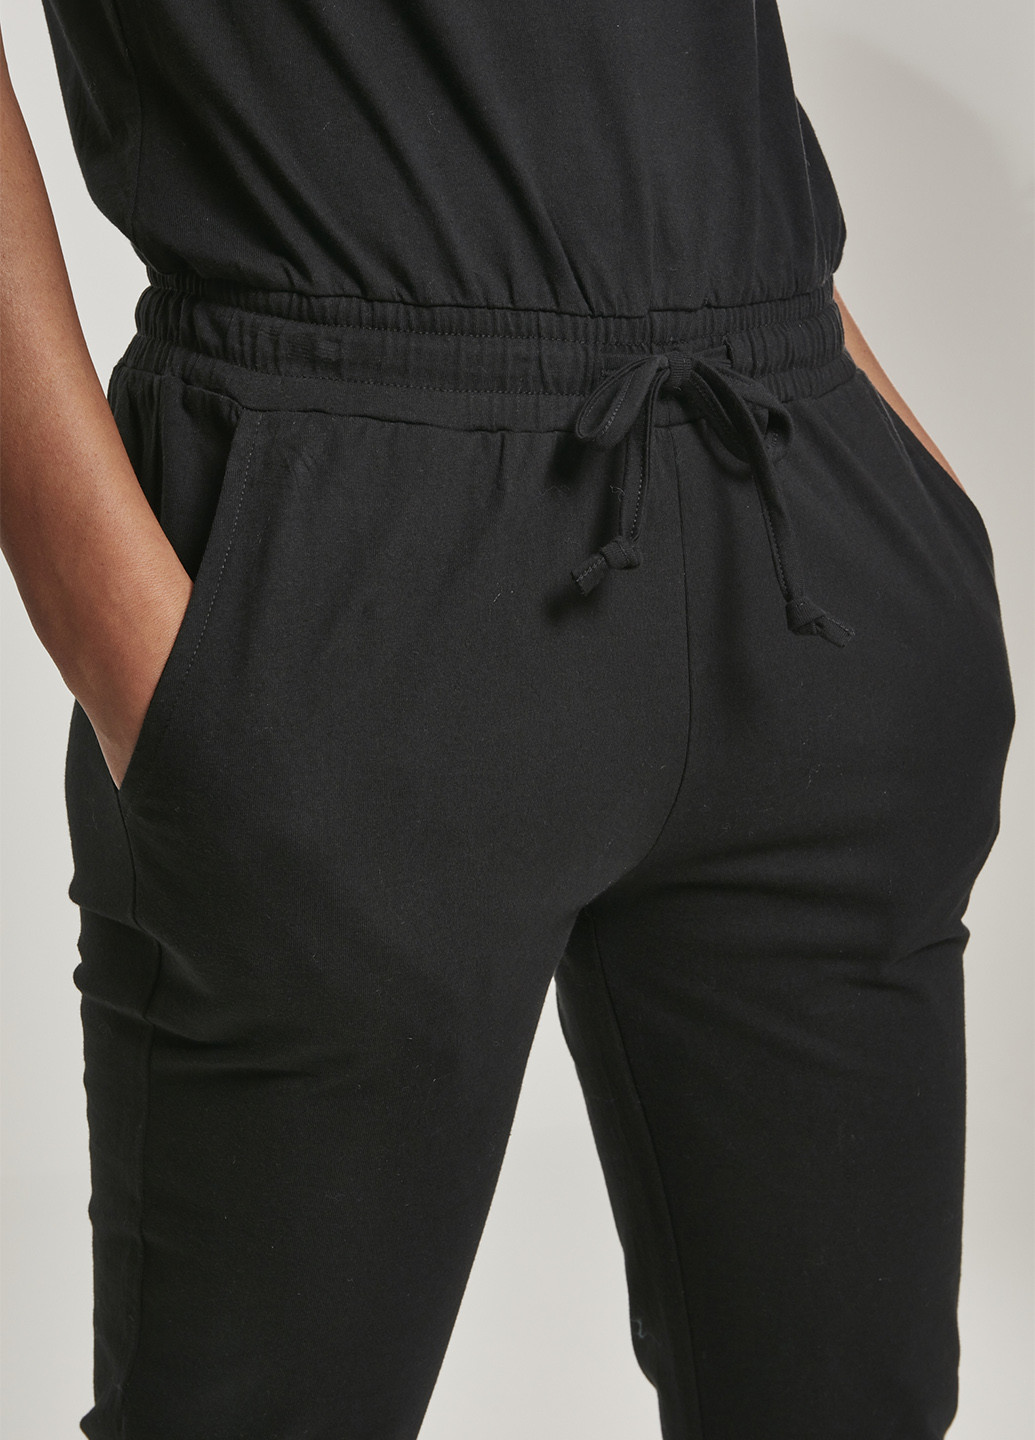 Комбинезон Urban Classics комбинезон-брюки однотонный чёрный кэжуал хлопок